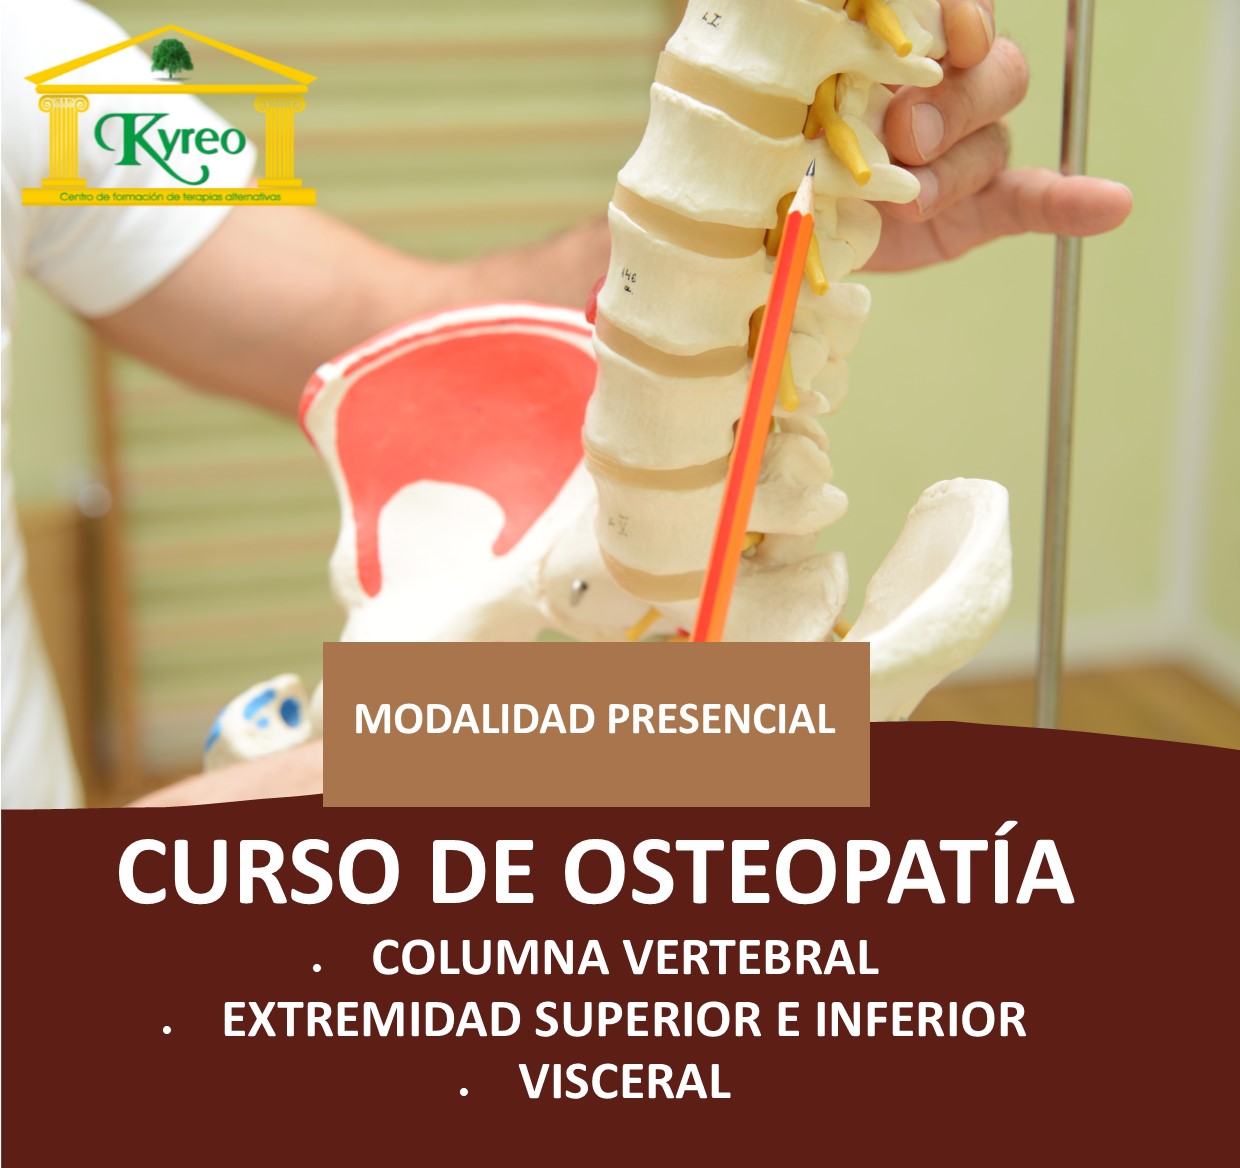 Curso de osteopatía en Kyreo